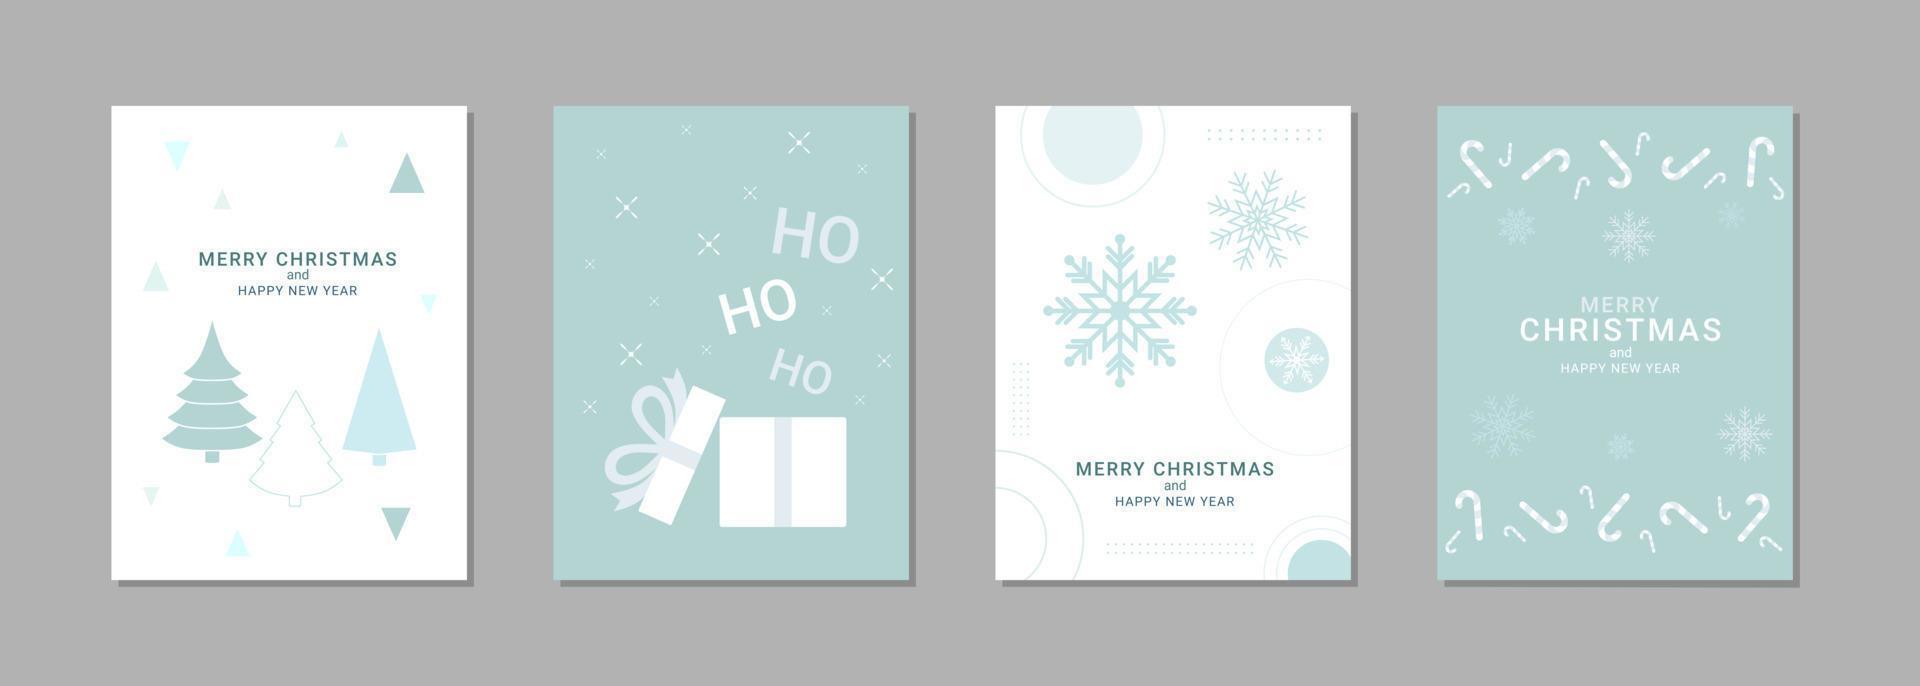 satz grußkarten der frohen weihnachten und des neuen jahres. sprachtextdesign mit einfachen elementen. Vektor-Illustration vektor